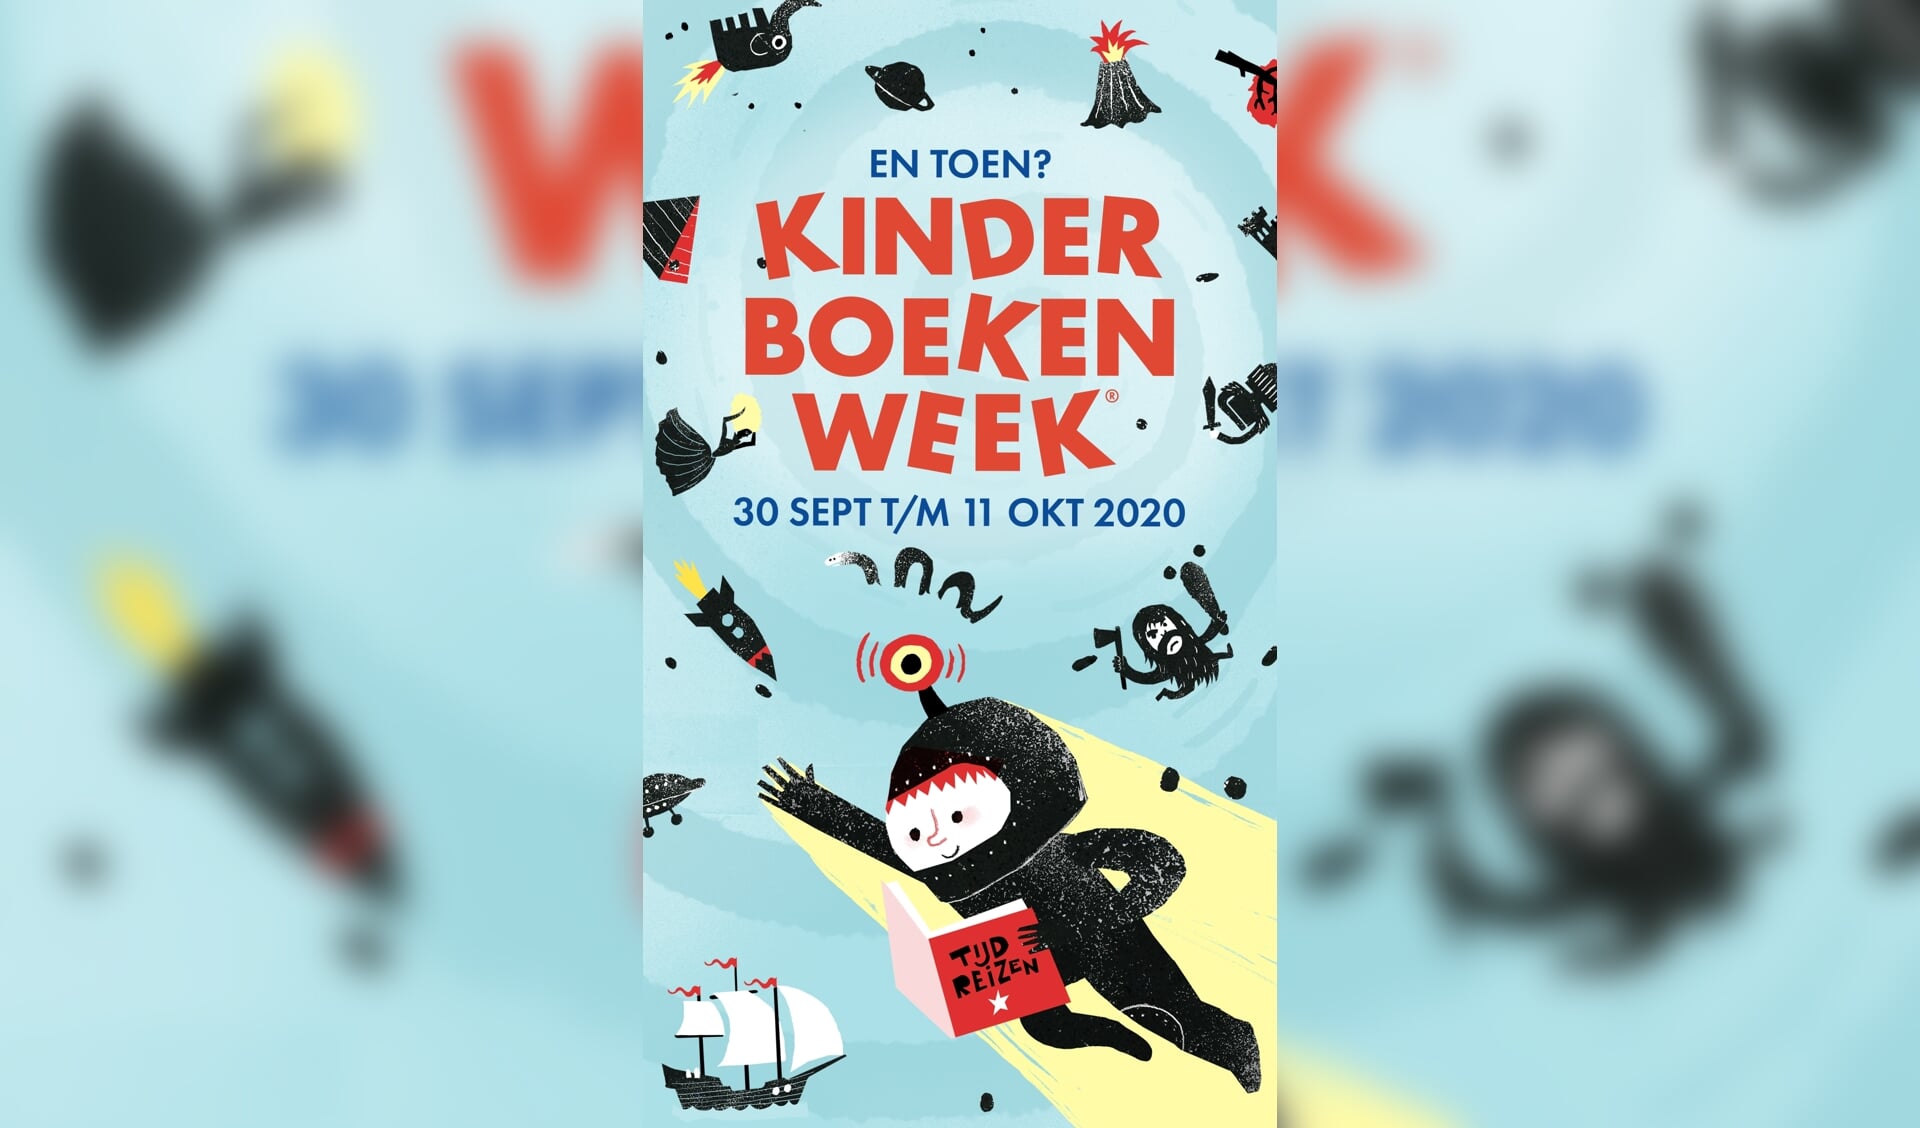 Dit jaar staat de Kinderboekenweek in het teken van geschiedenis, met het thema ‘En toen?’ 